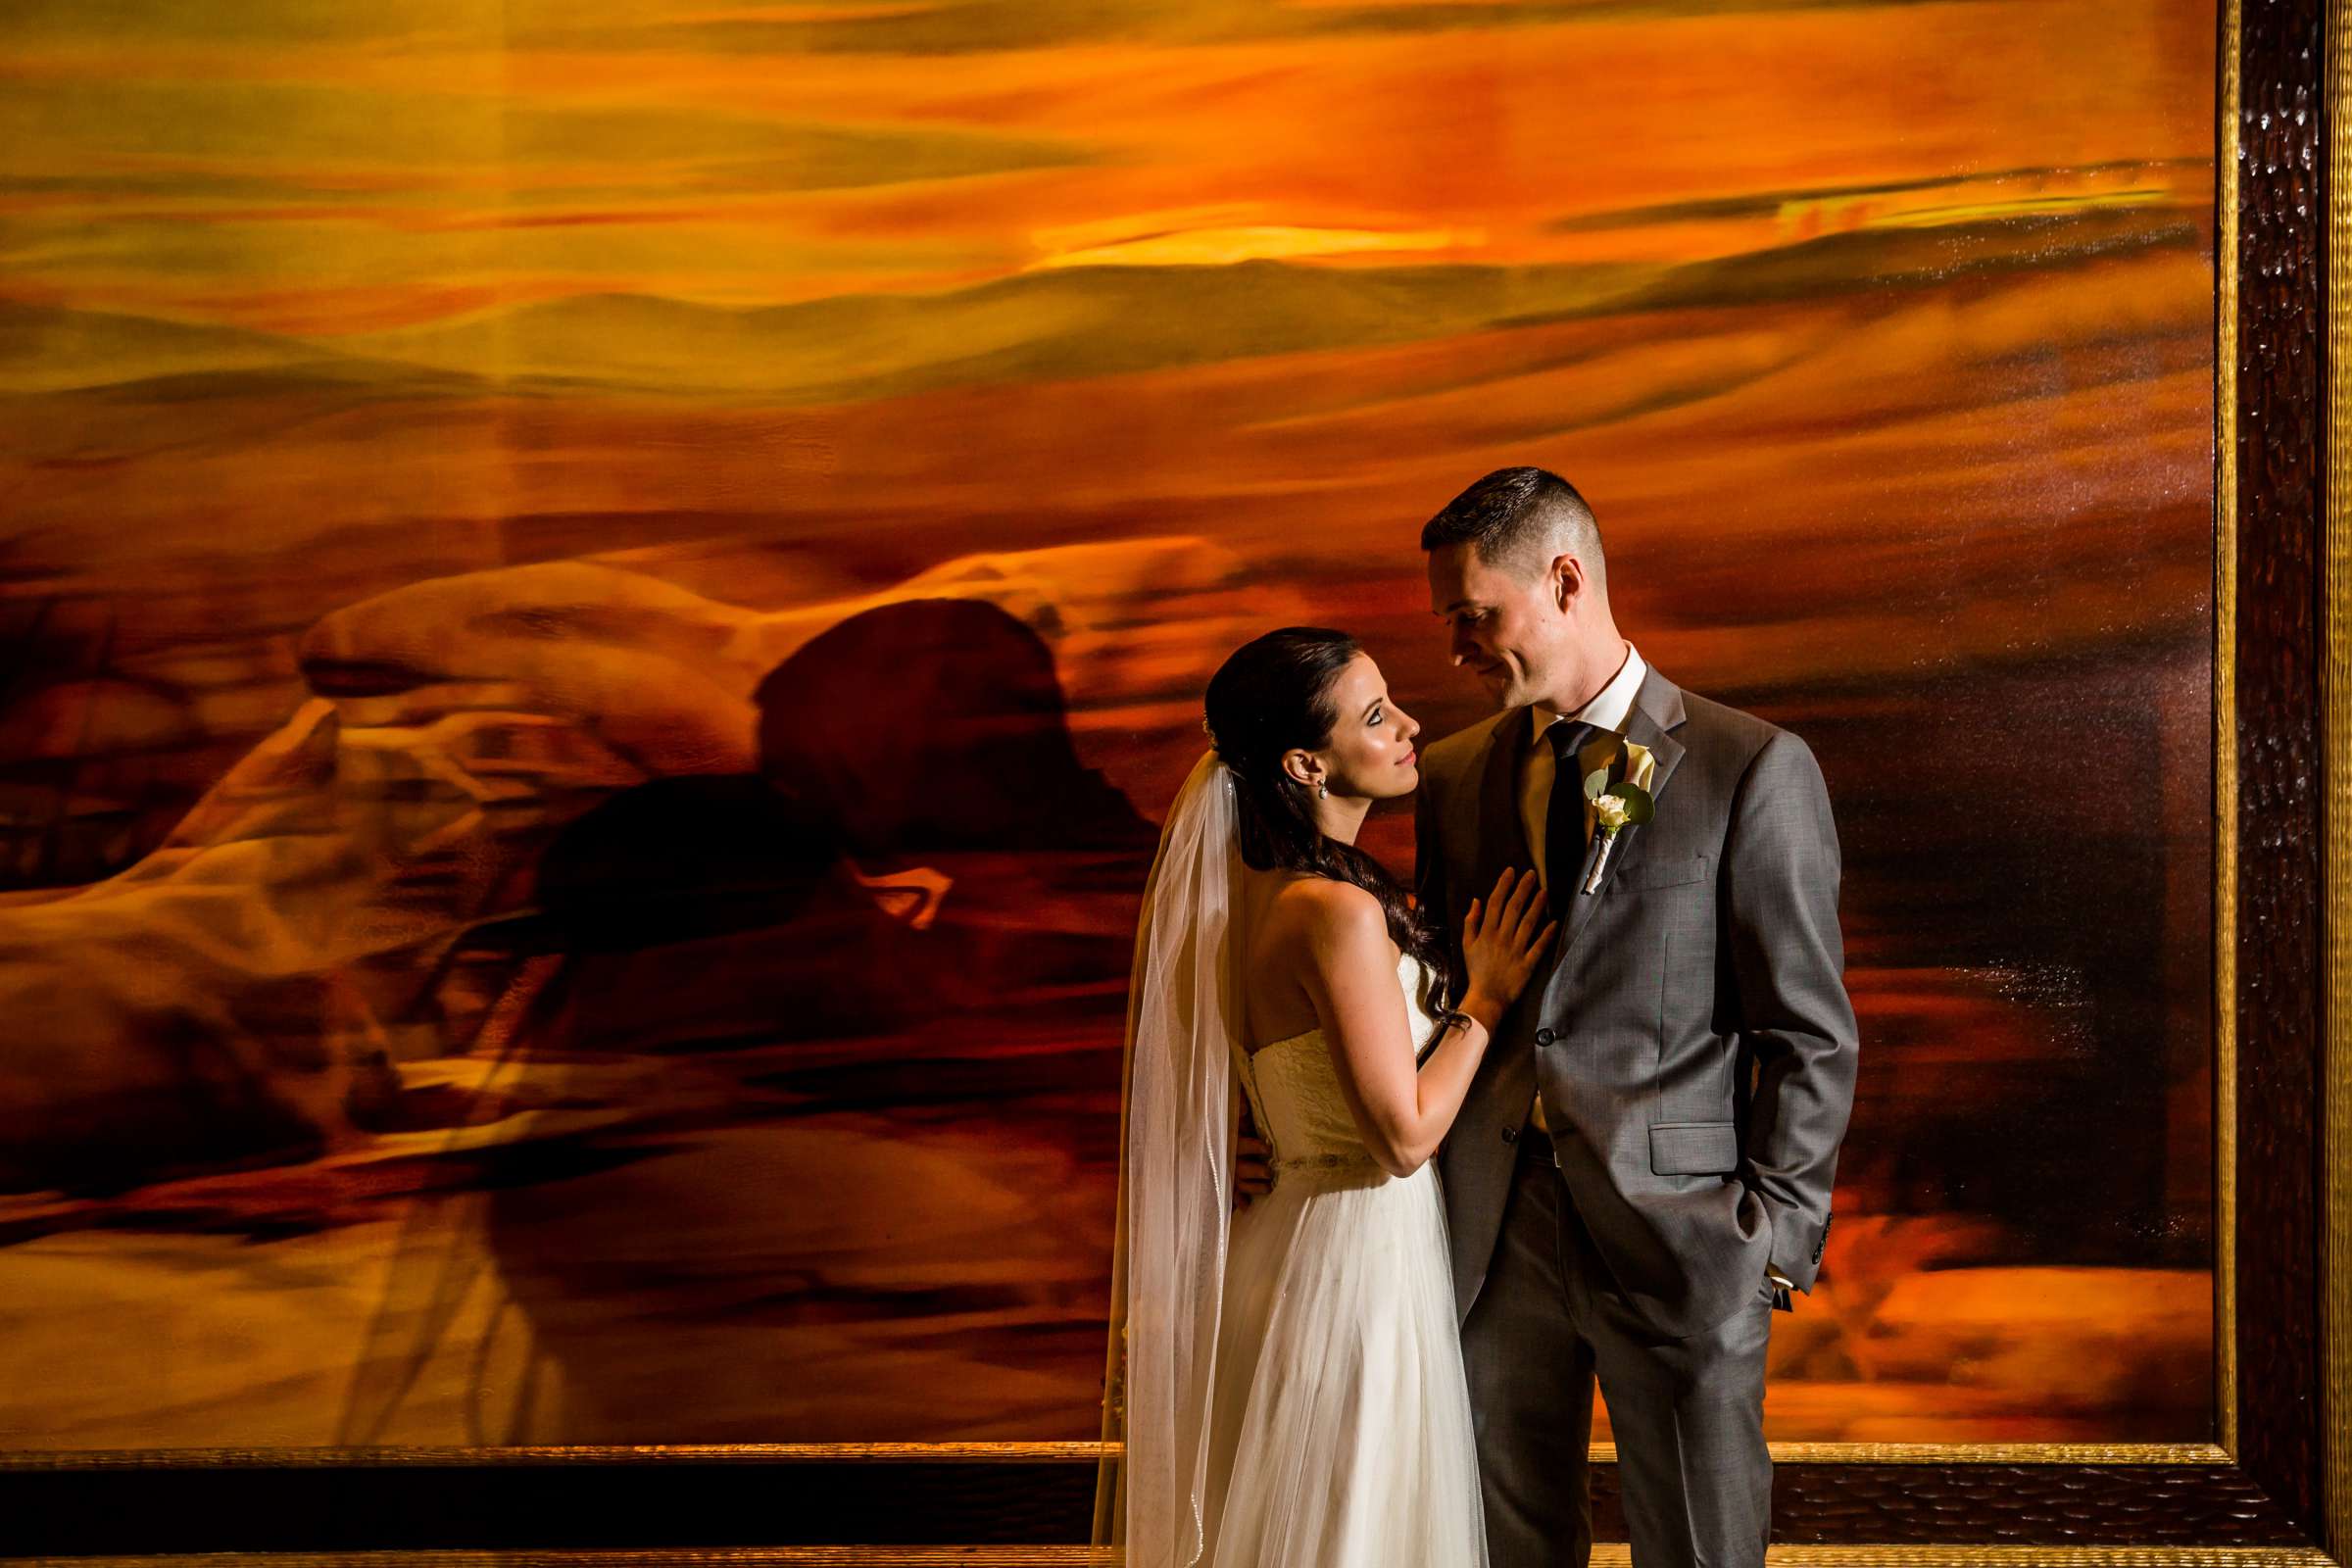 Park Hyatt Aviara Wedding, Jena and Keaton Wedding Photo #4 by True Photography